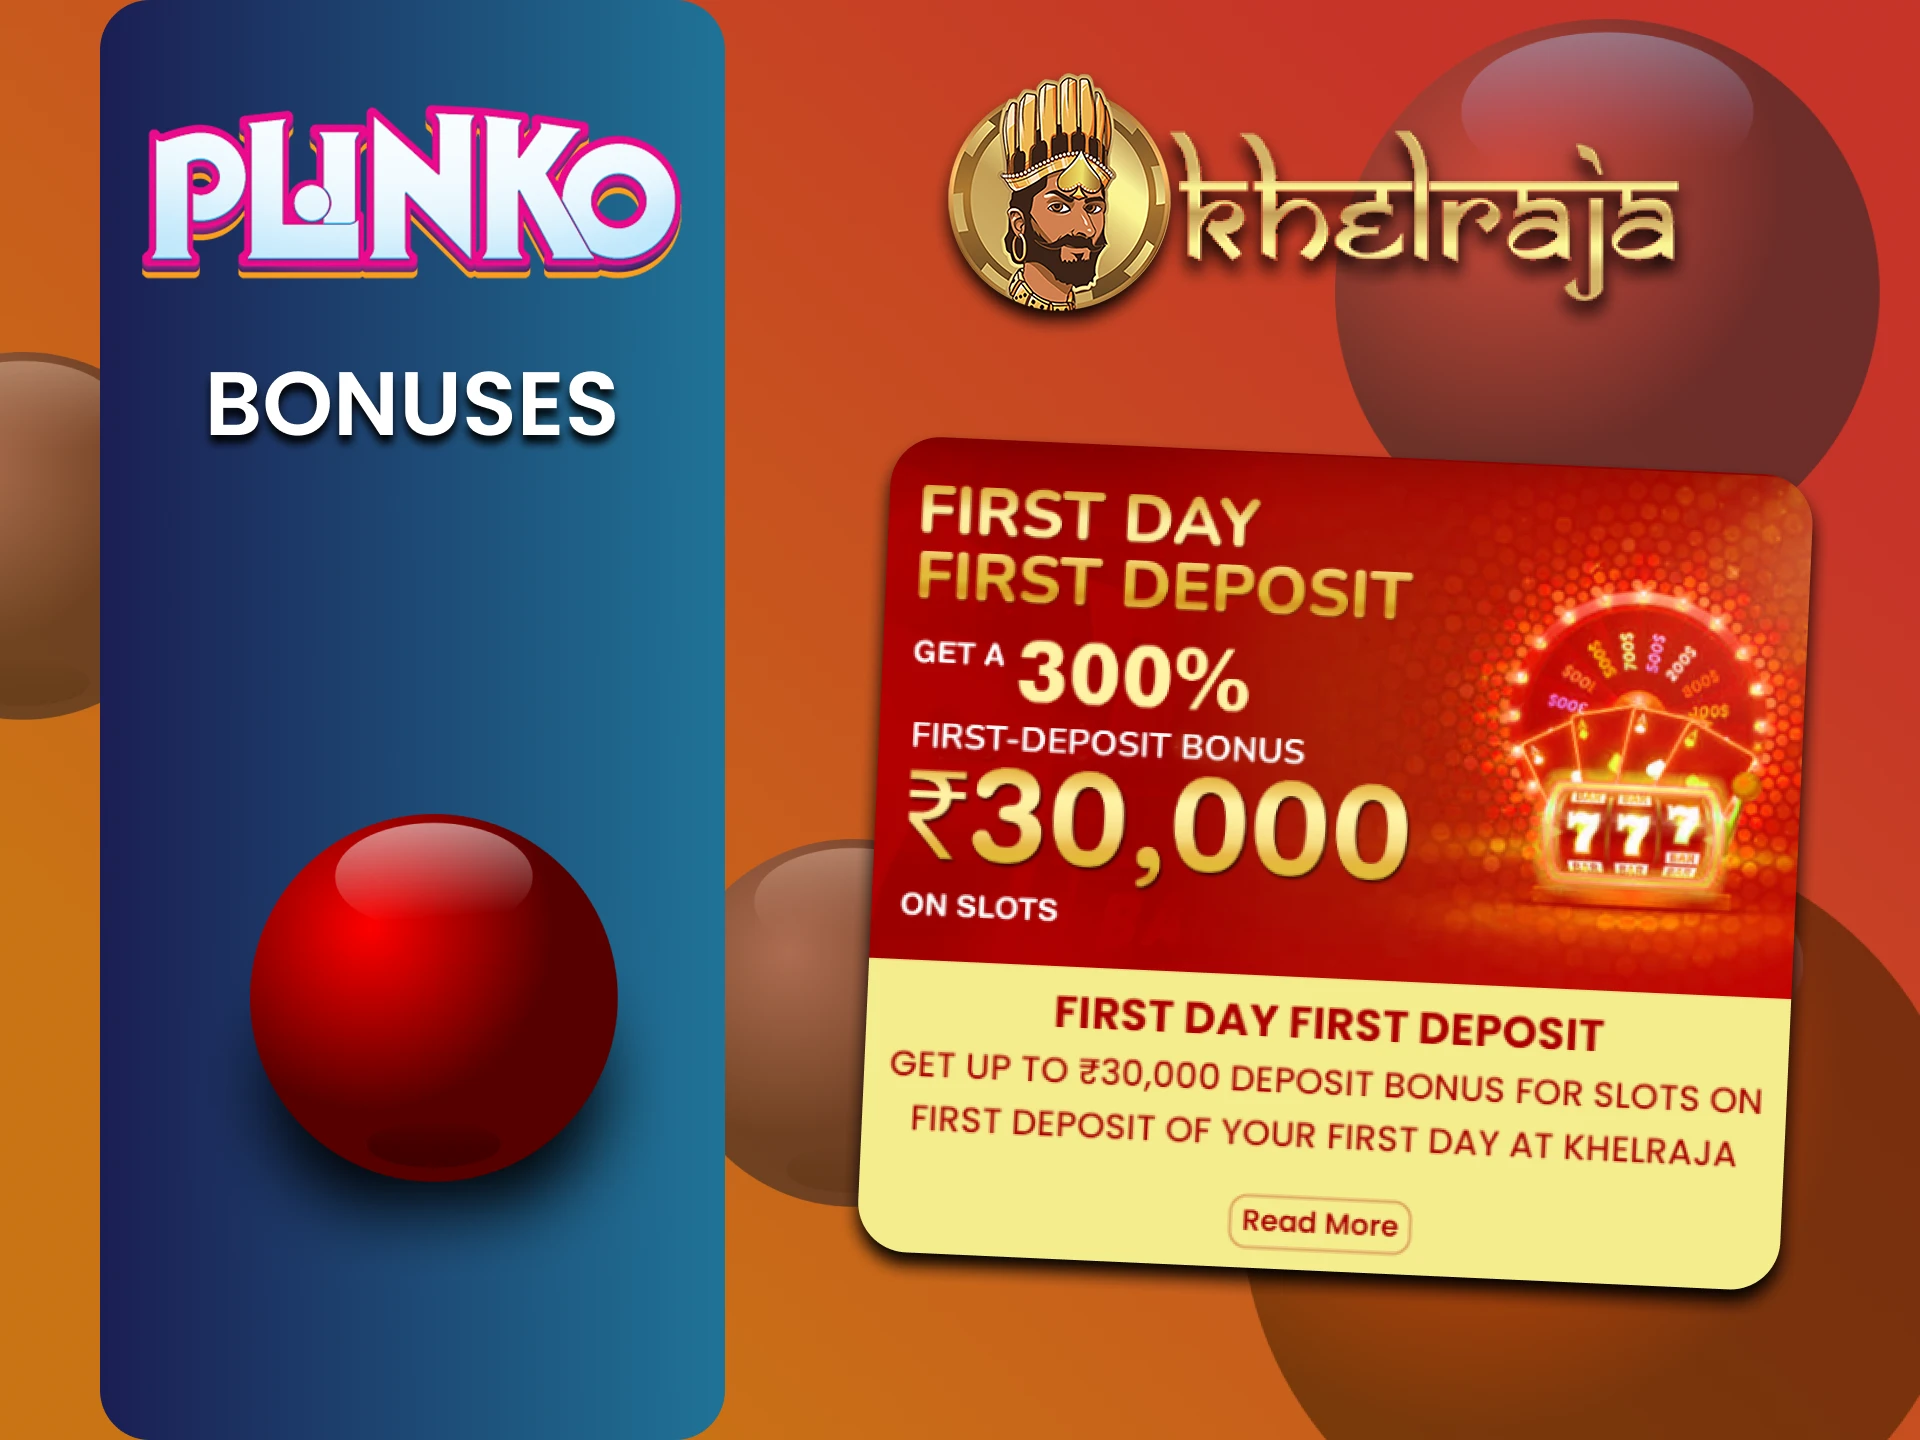 Get bonuses for Plinko from Khelraja.